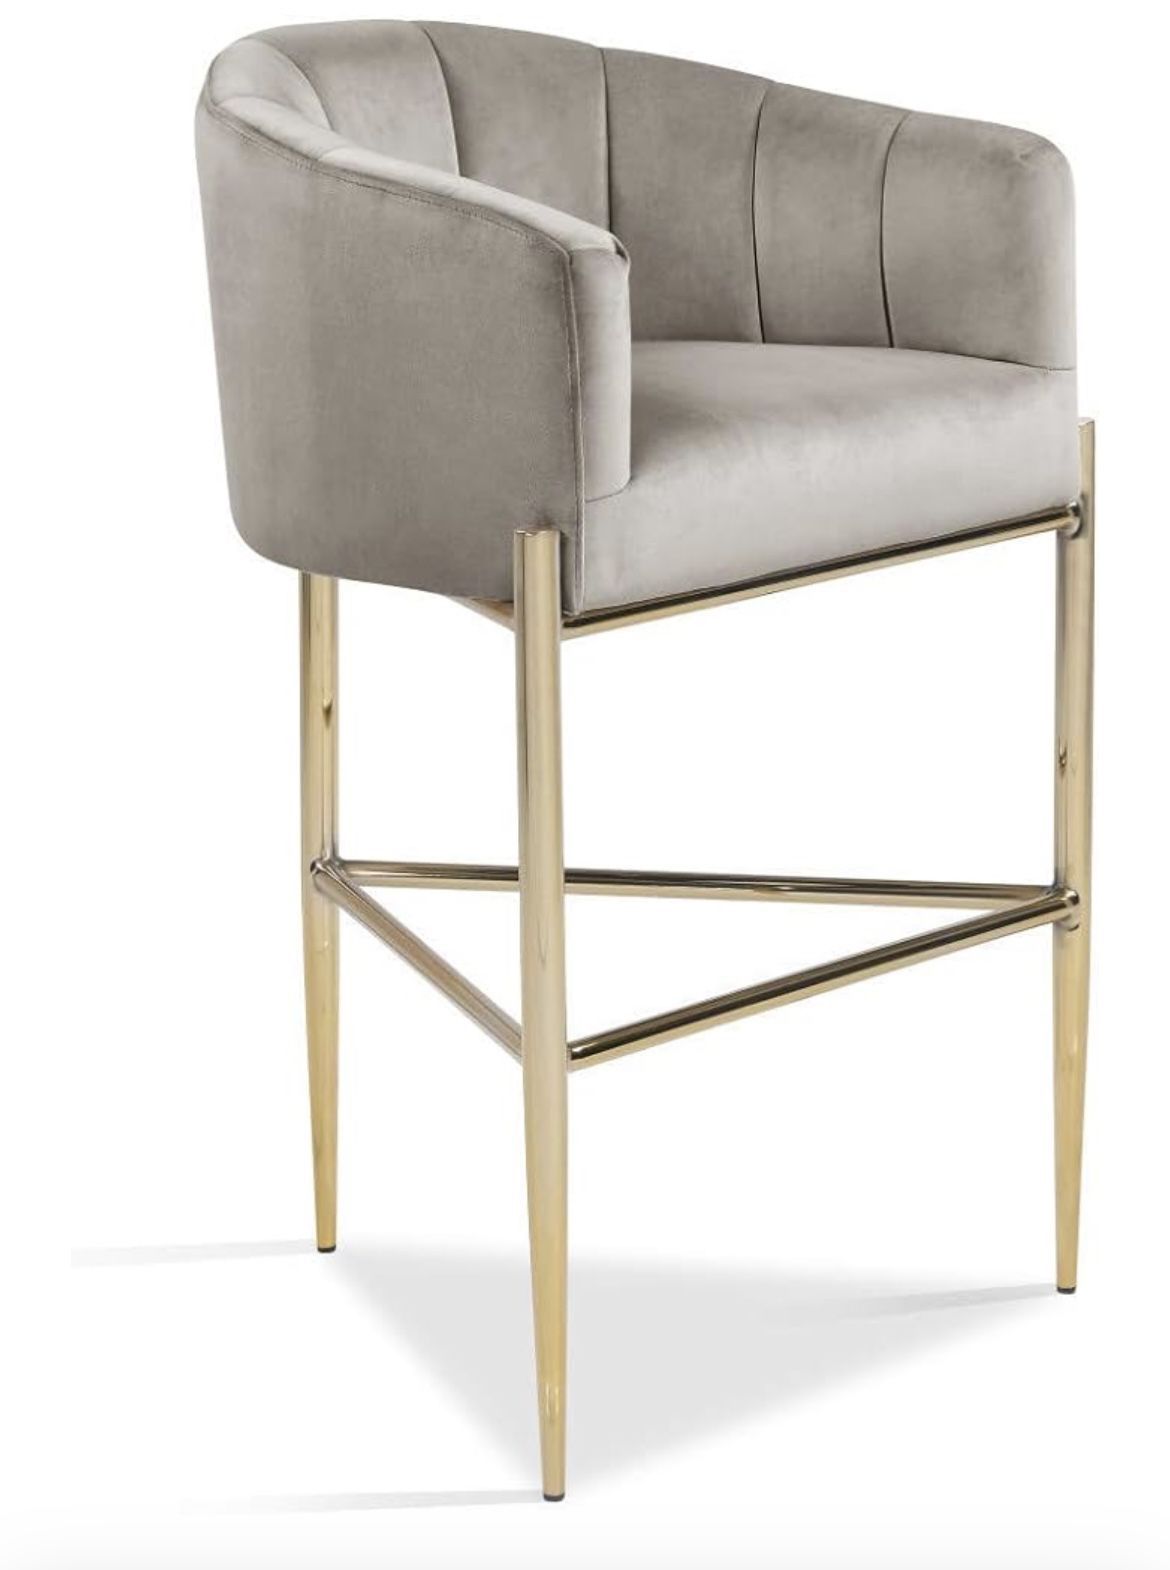 Bar stool Chair Velvet Upholstered Shelter Arm Shell Design 3 Legged Gold ,8 Chairs Available 